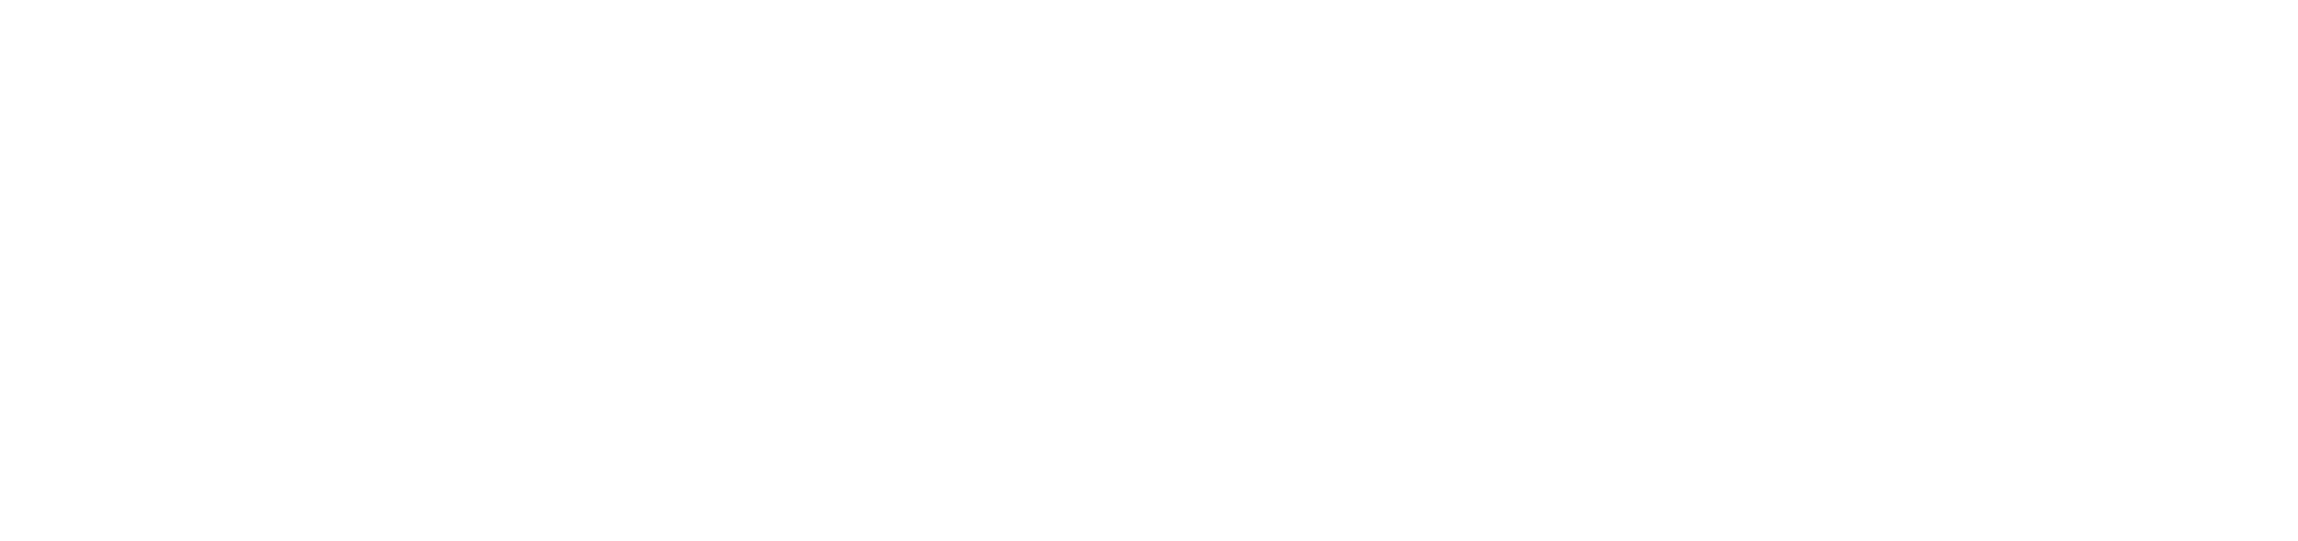 First Interstate BancSystem logo large for dark backgrounds (transparent PNG)